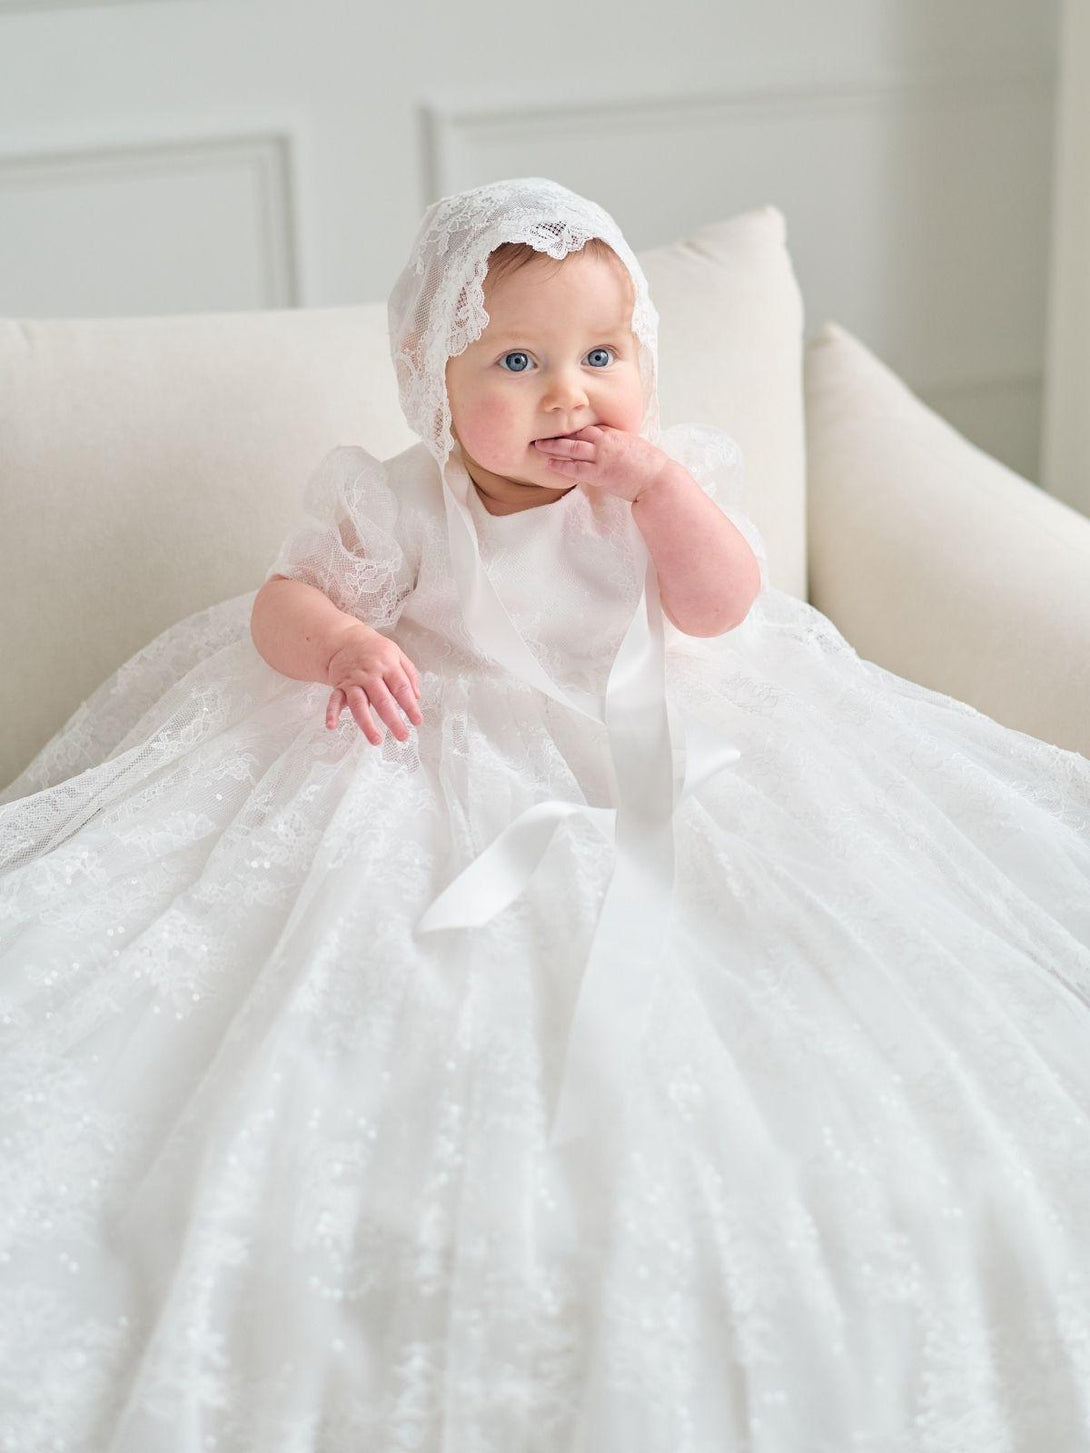 Baby Baptism Long Gown Dresses Flower Girl Wedding White Dress